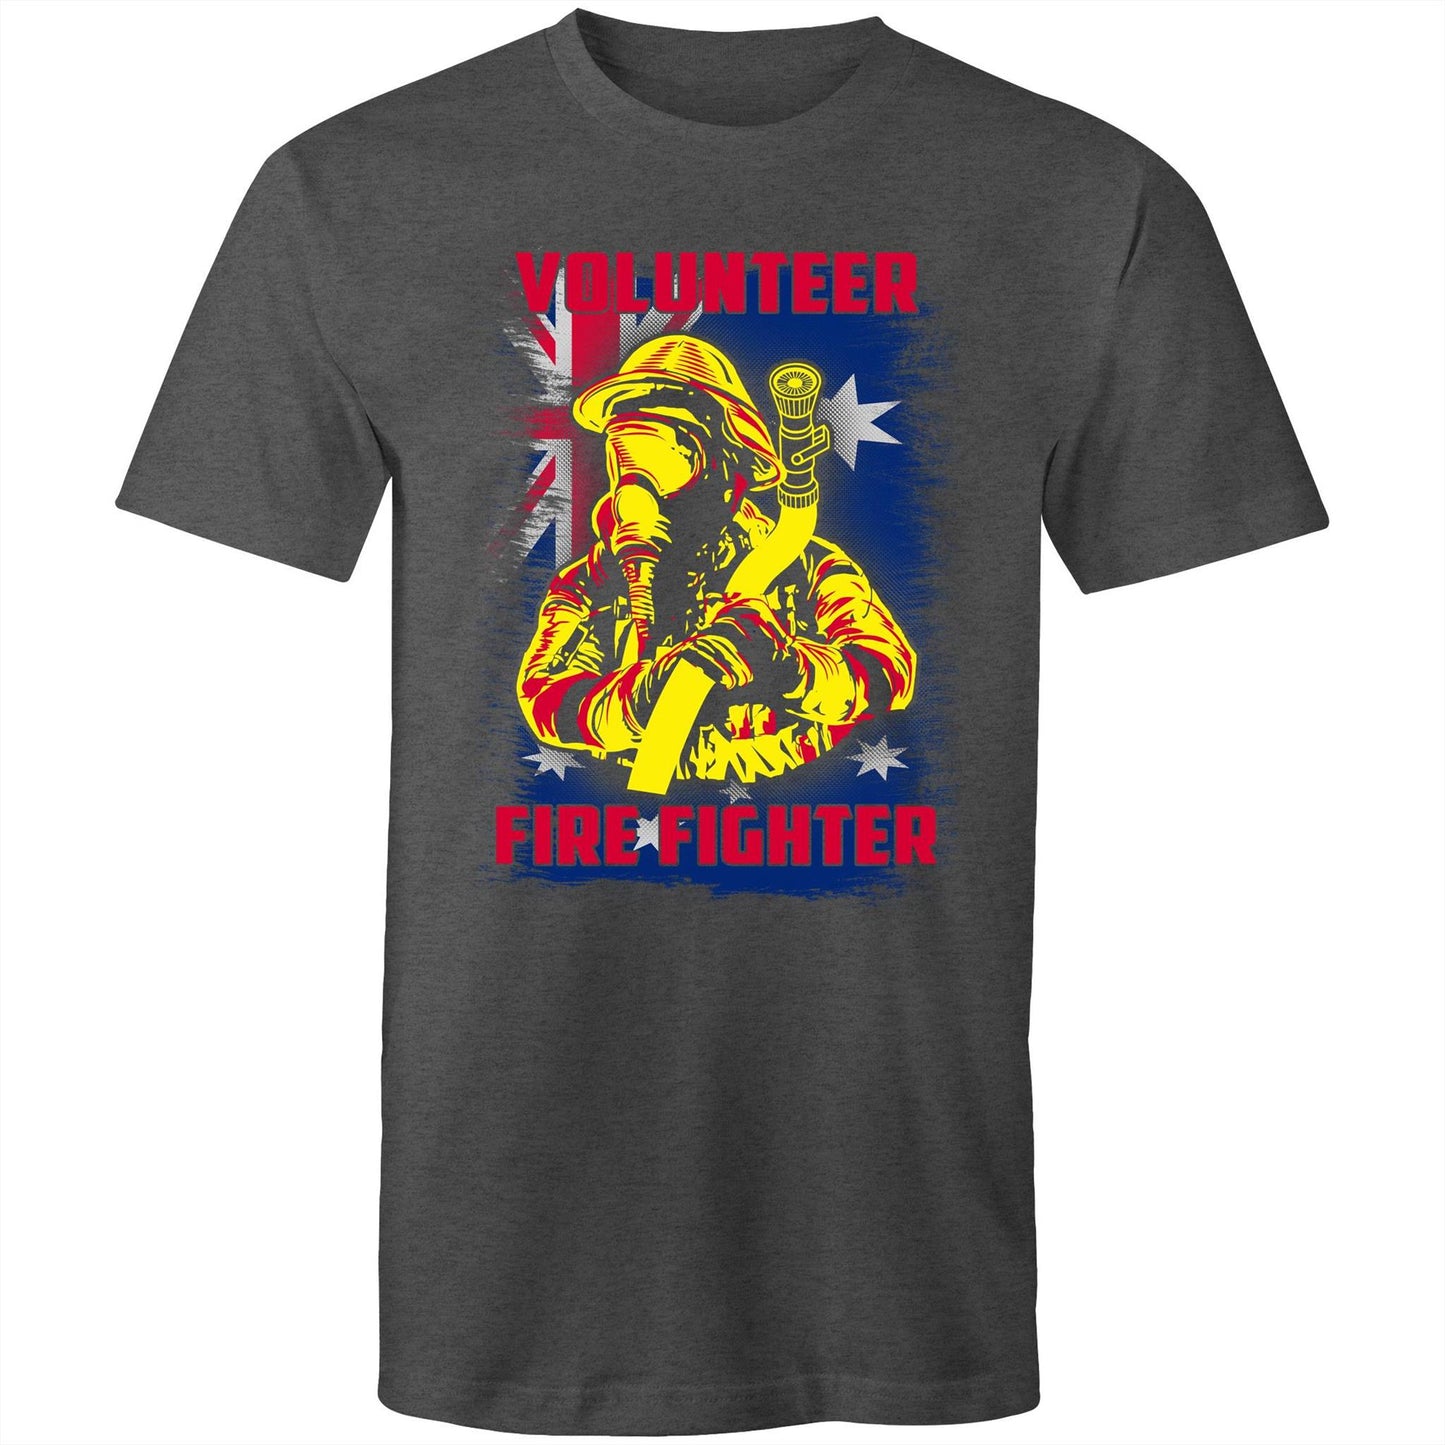 VOLUNTEER FIREFIGHTER Mens T-Shirt